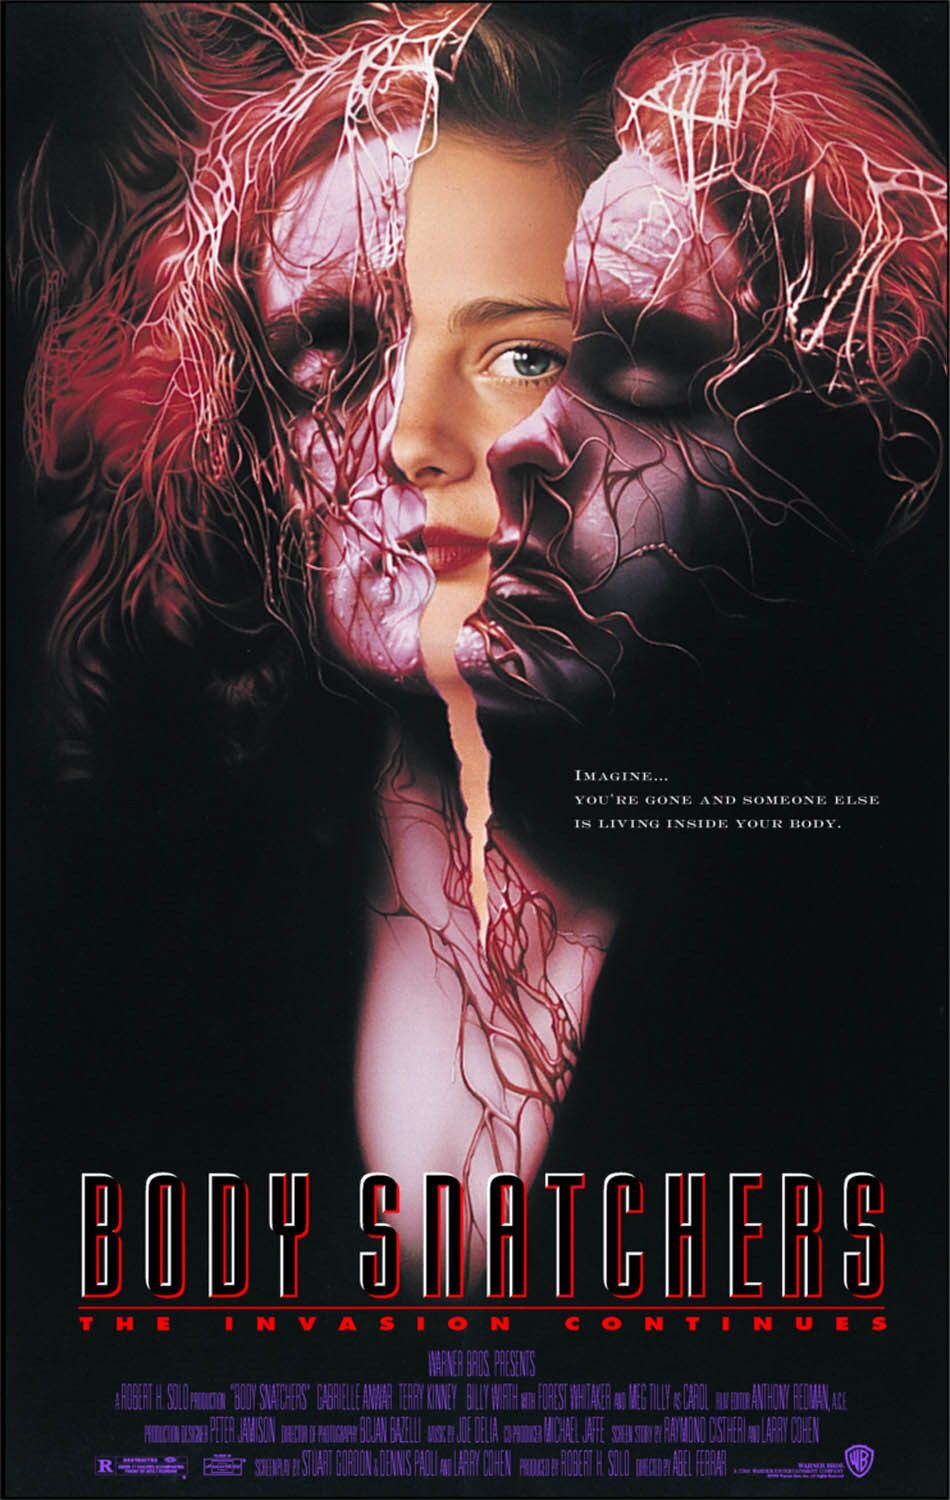 Body Snatchers (1993 film) | Warner Bros. Entertainment Wiki | Fandom